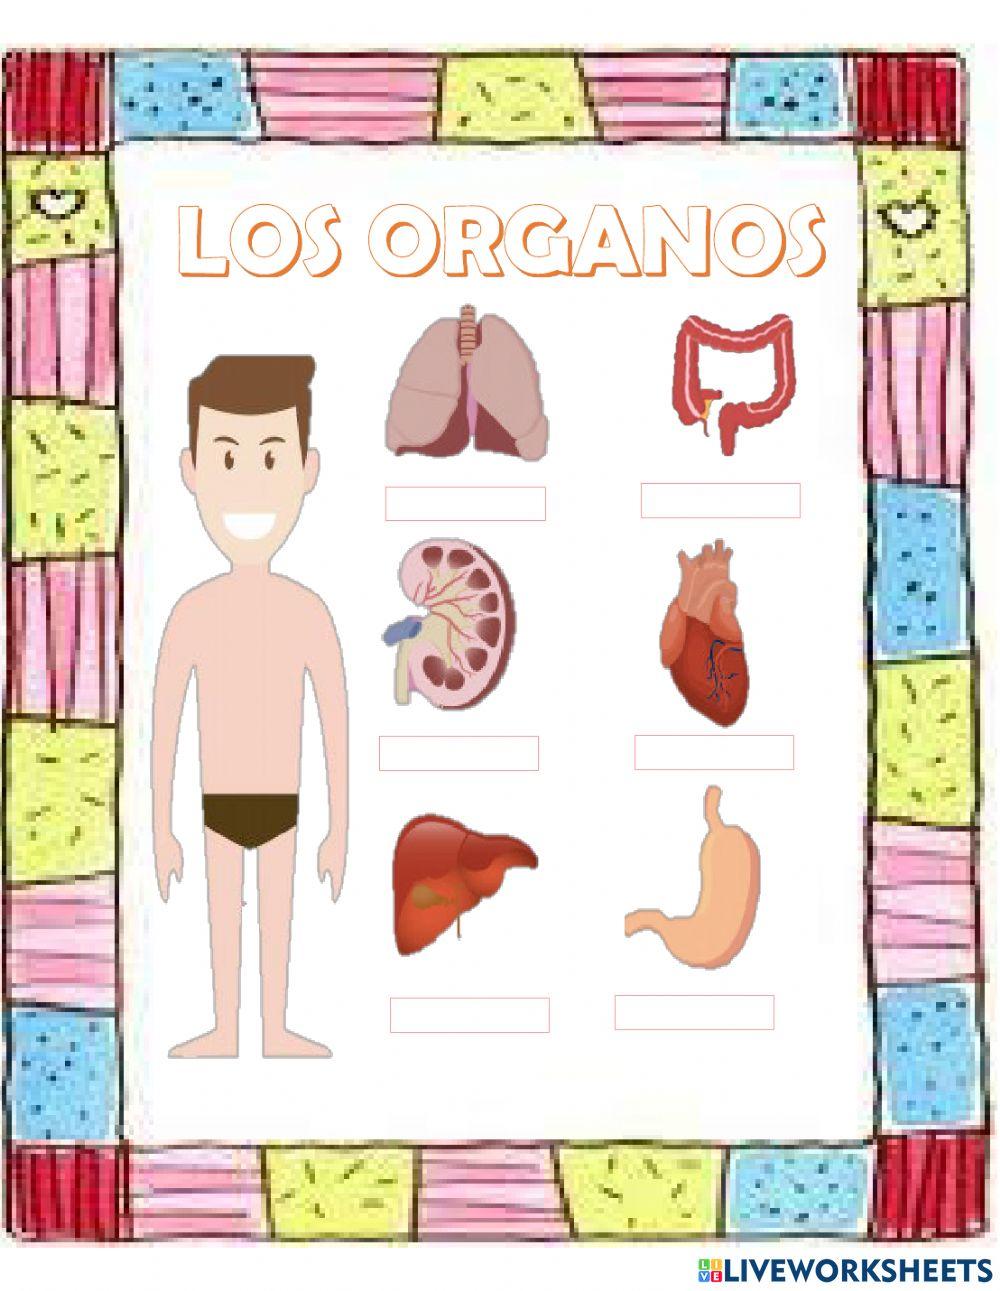 Los organos